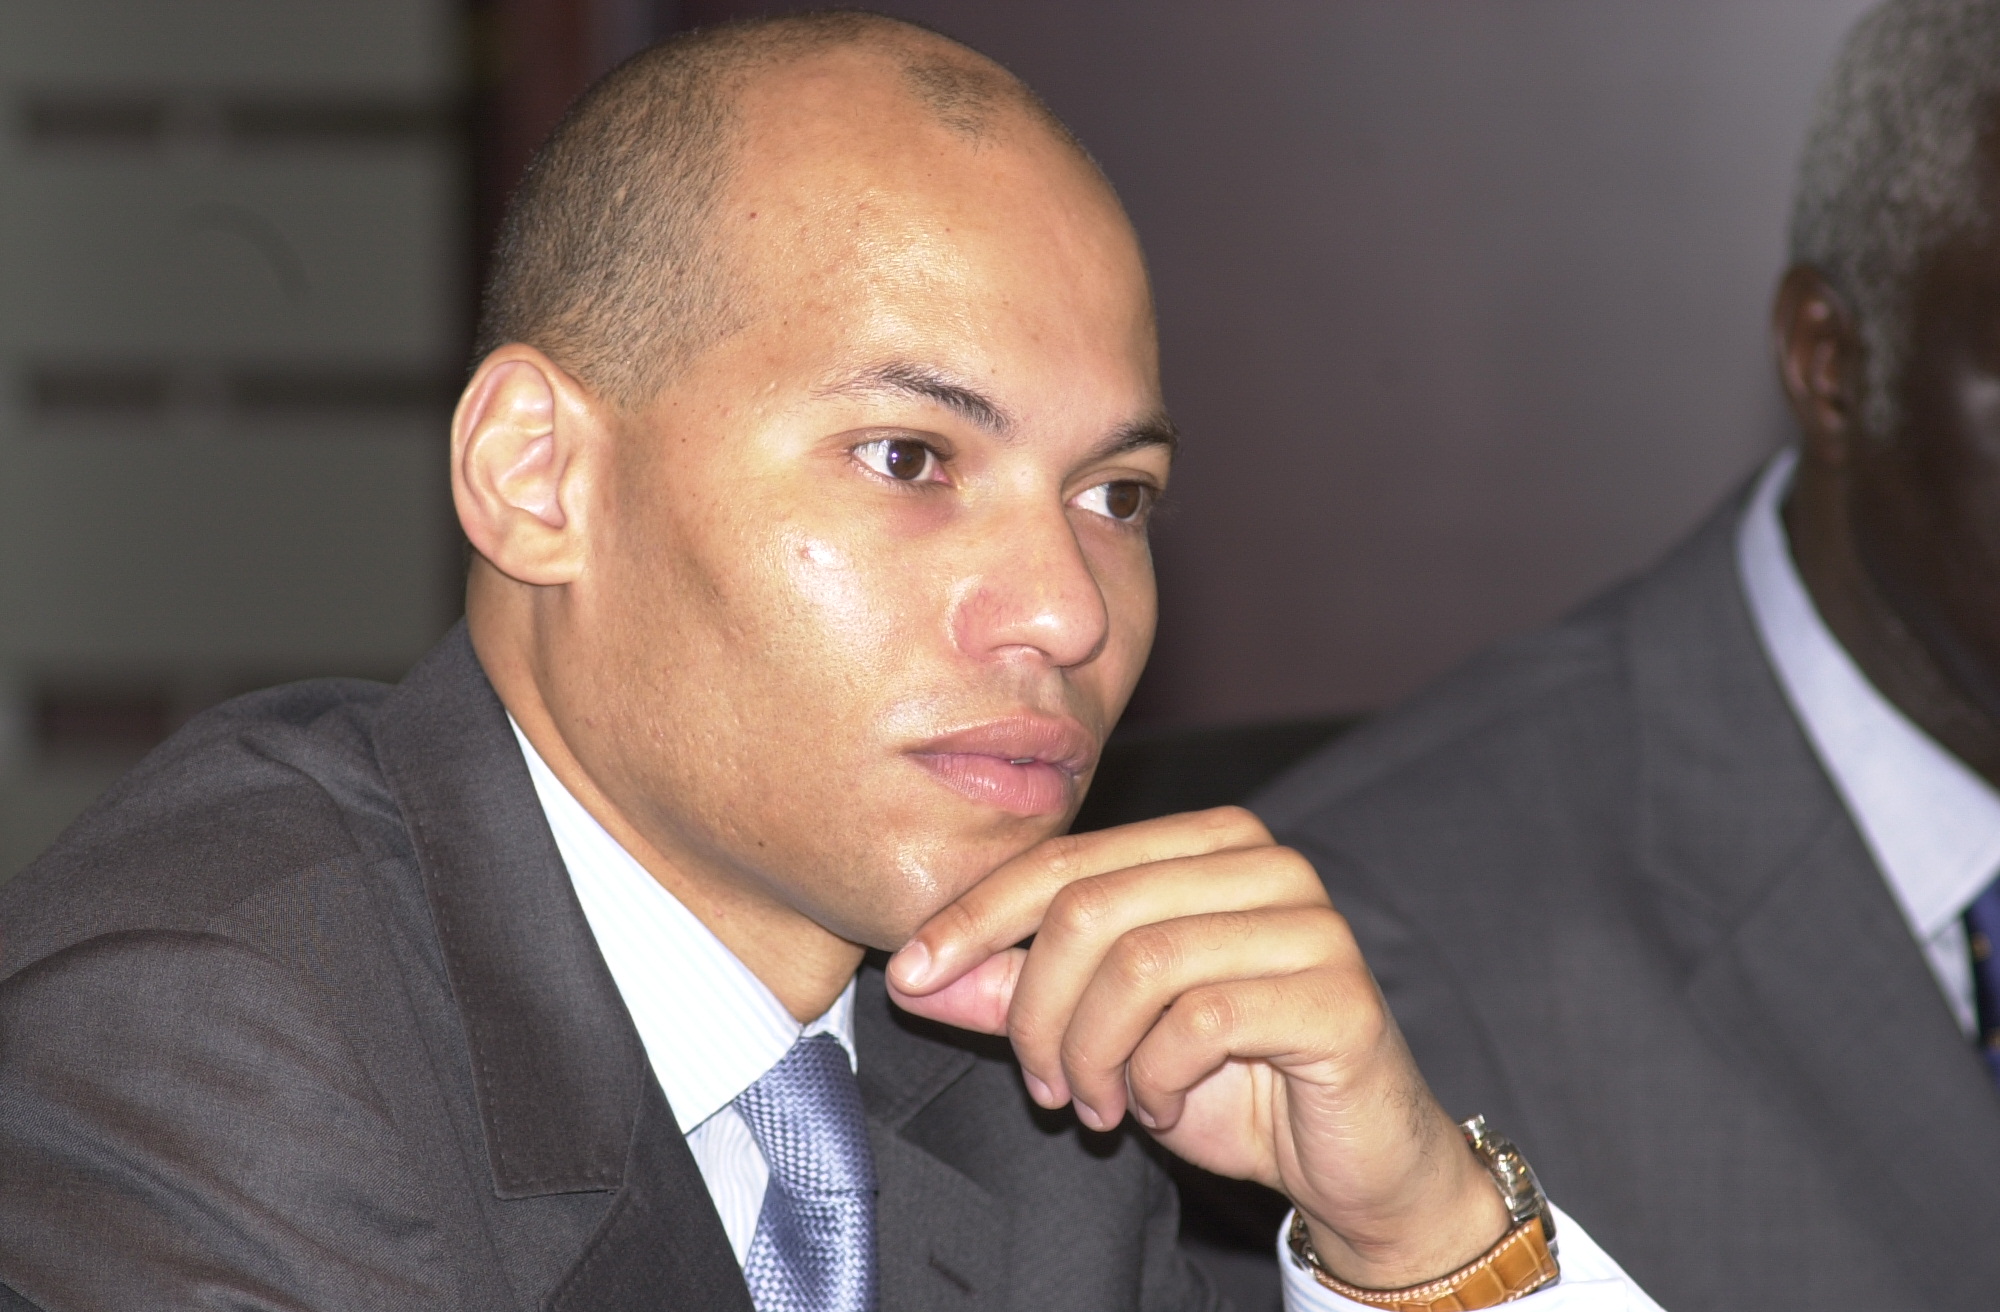 Affaire Karim Wade... Aucun rebondissement à Monaco...Pourquoi la procédure sera renvoyée (EXCLUSIVITÉ DAKARPOSTE)